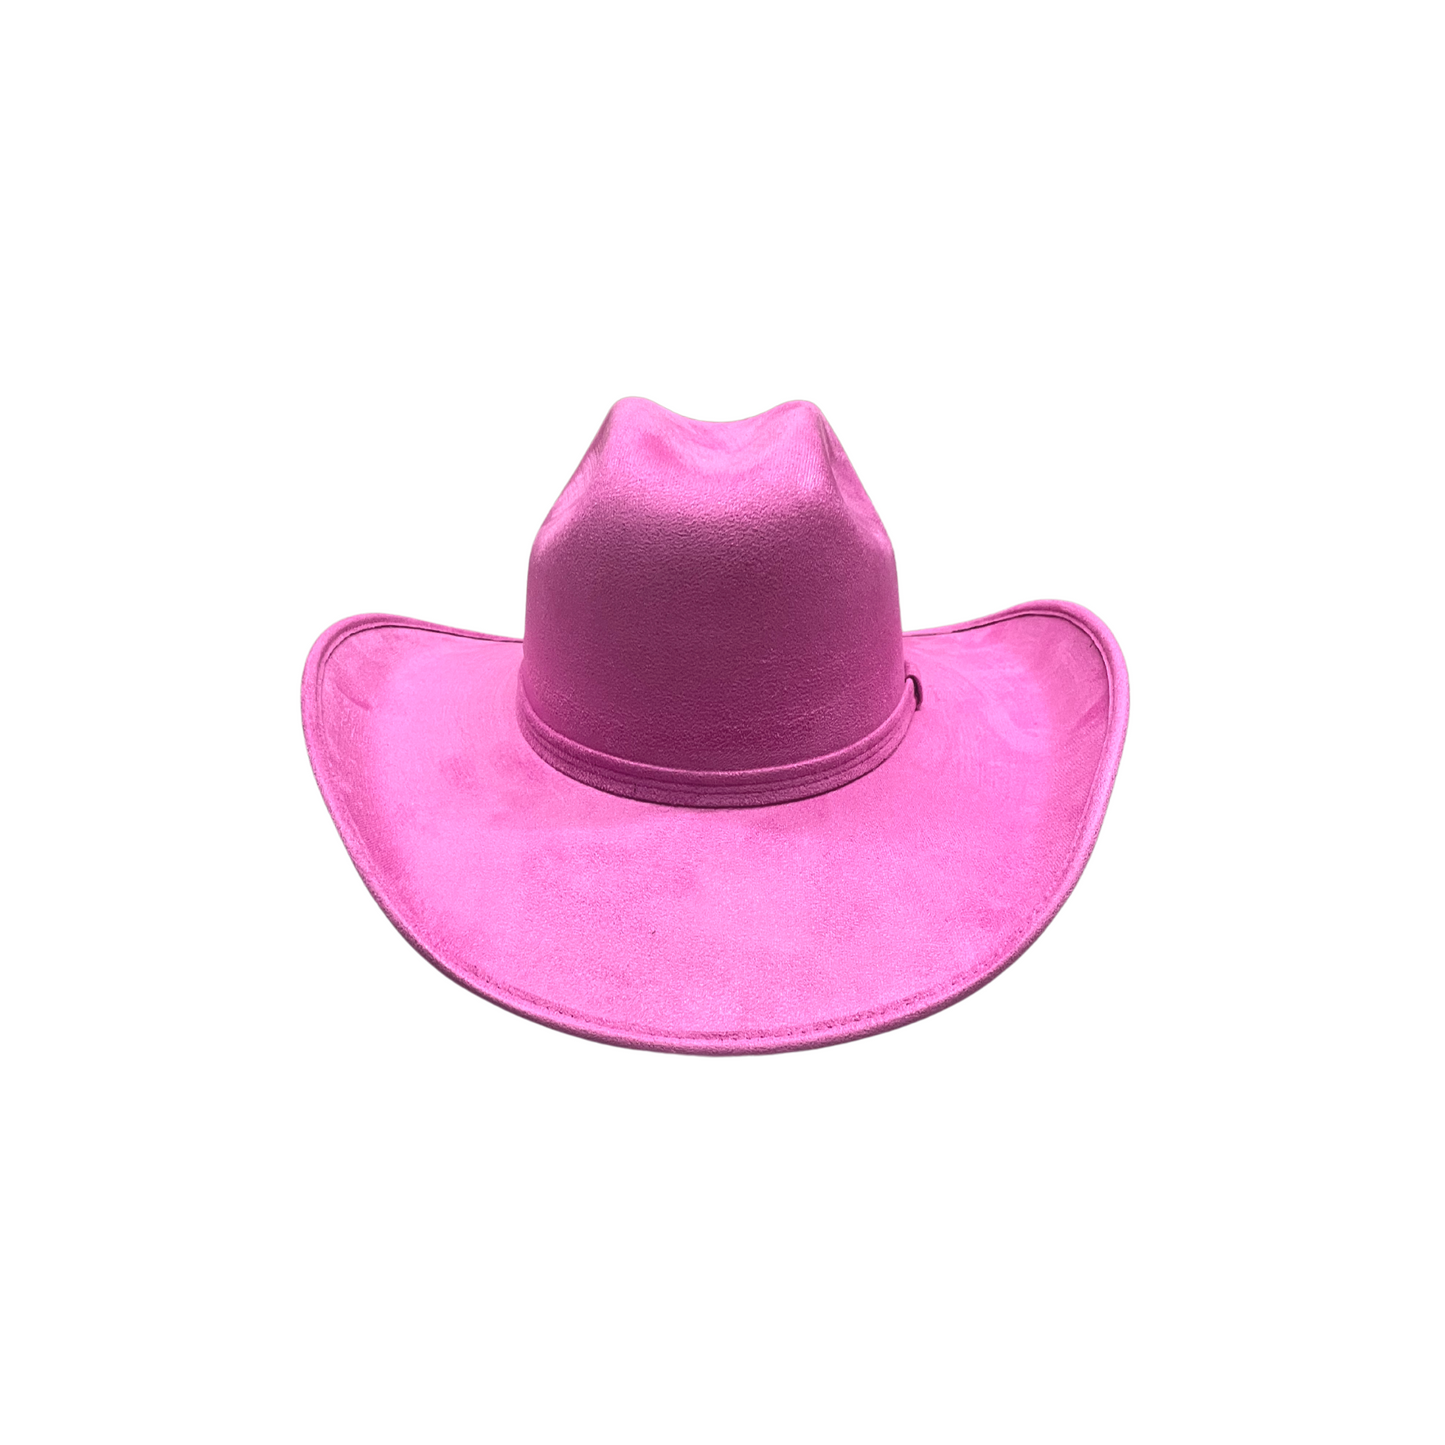 The Western Legend - Lipstick Pink D&D